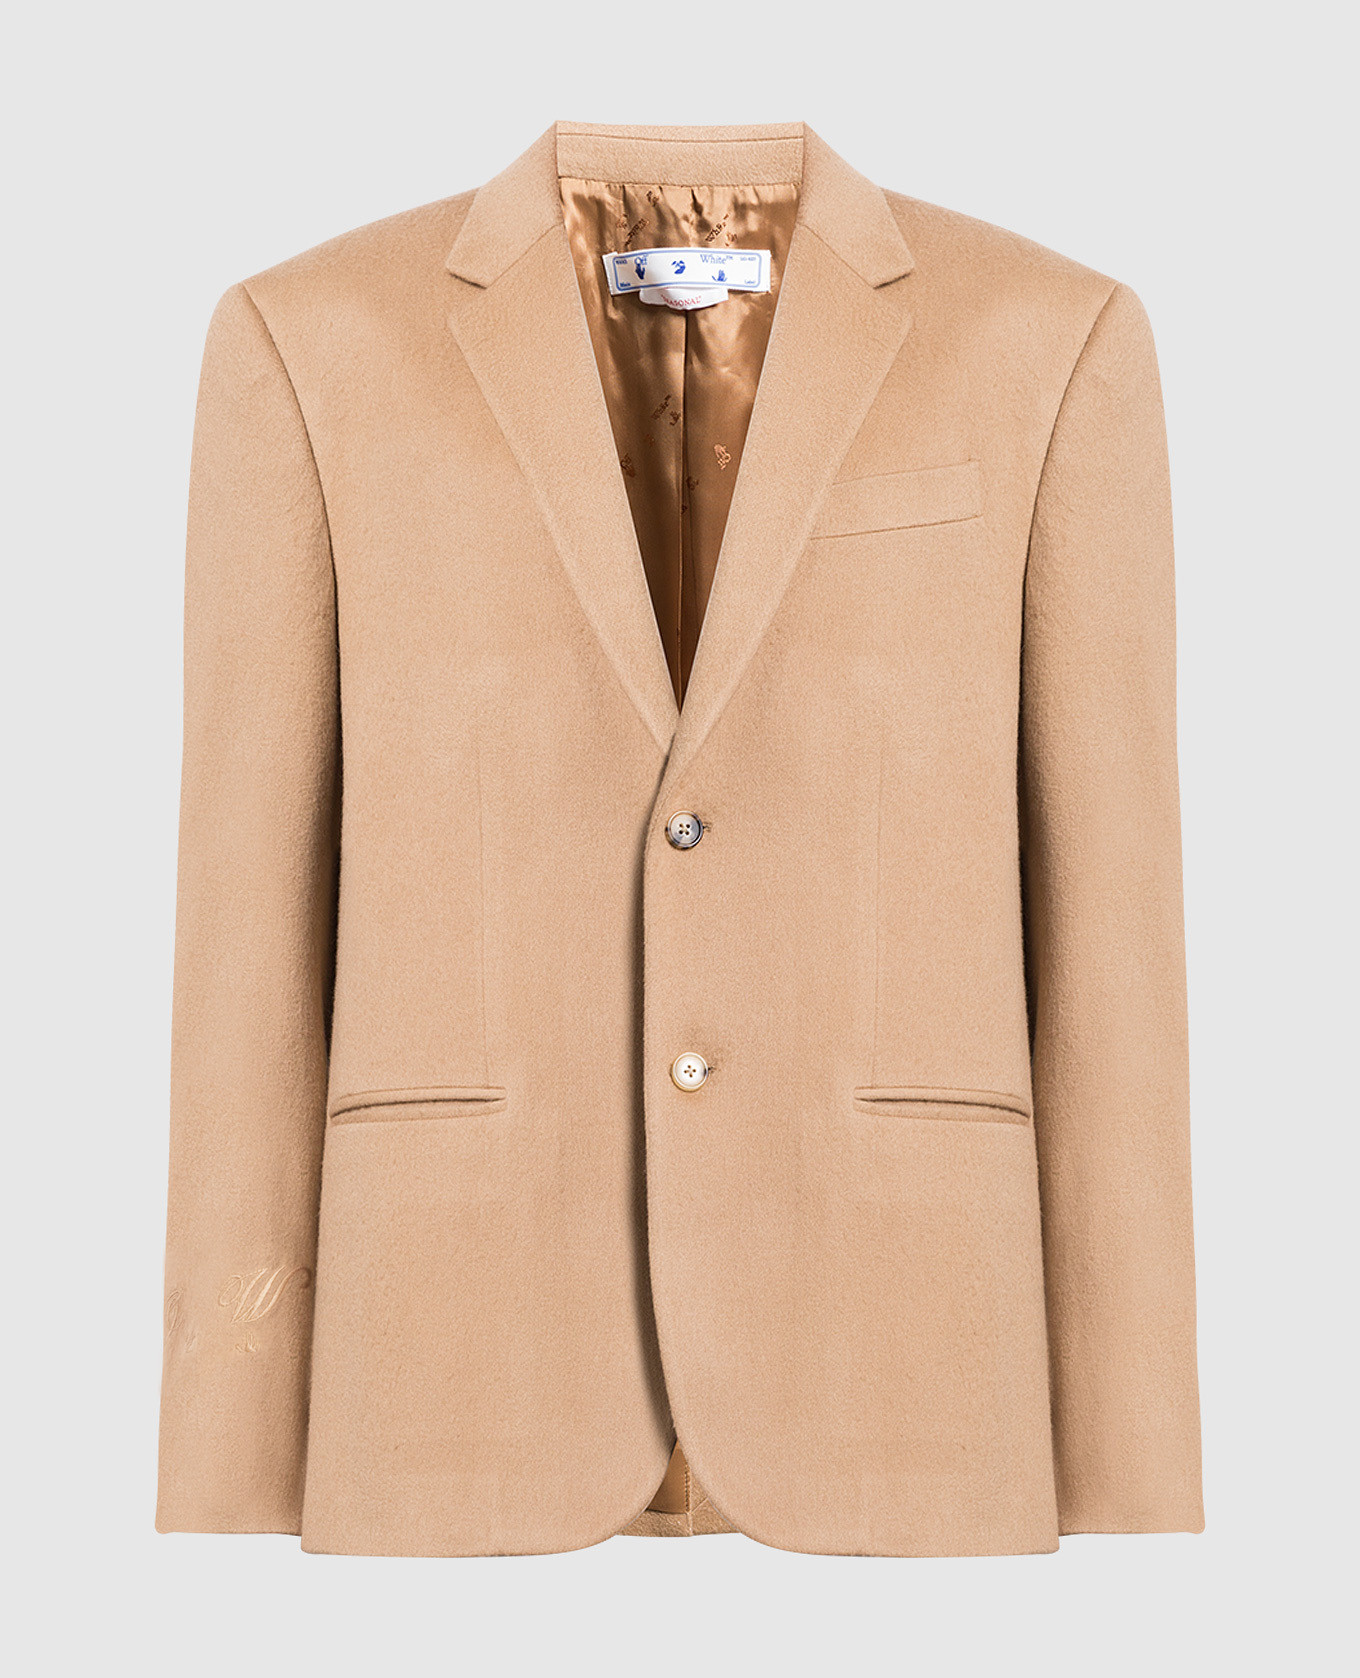 Brown cashmere blazer